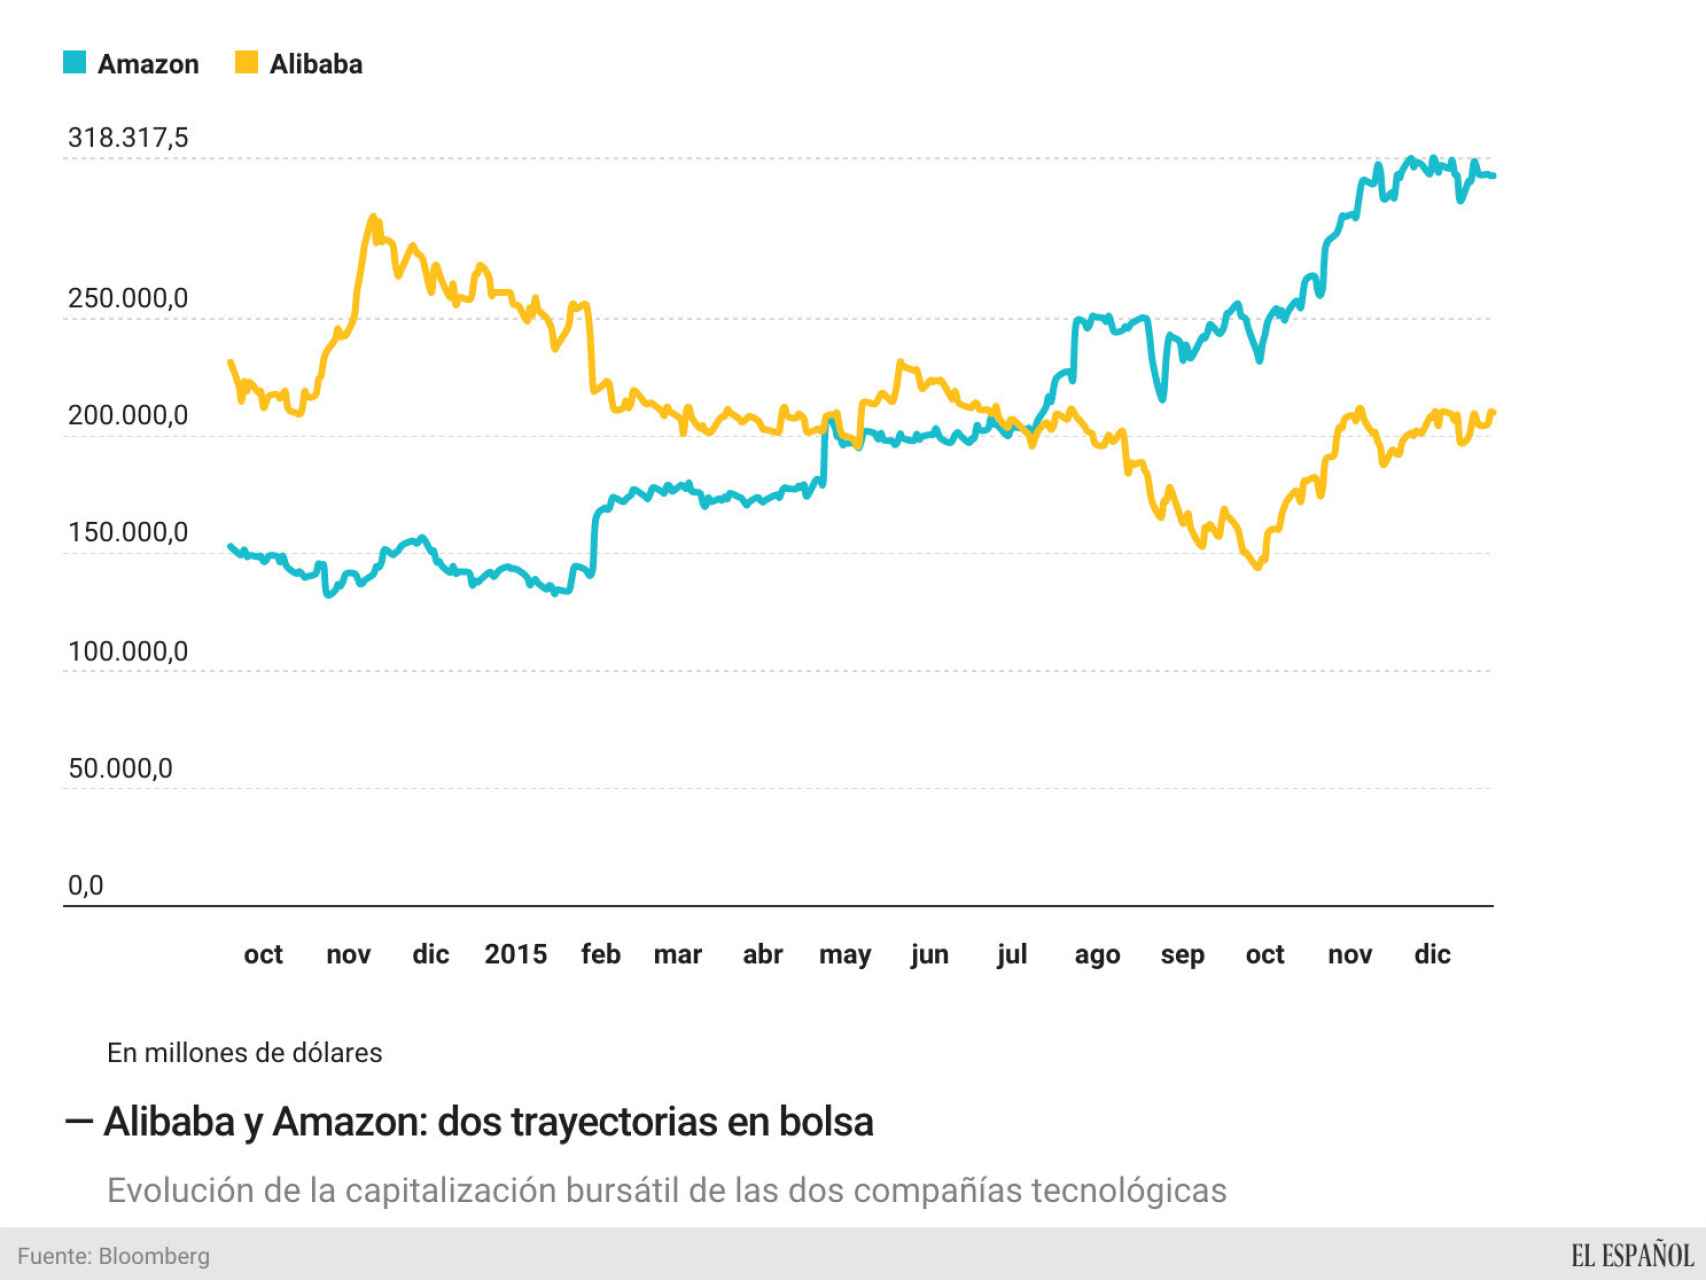 La capitalización bursátil de Amazon y Alibaba en el último año.